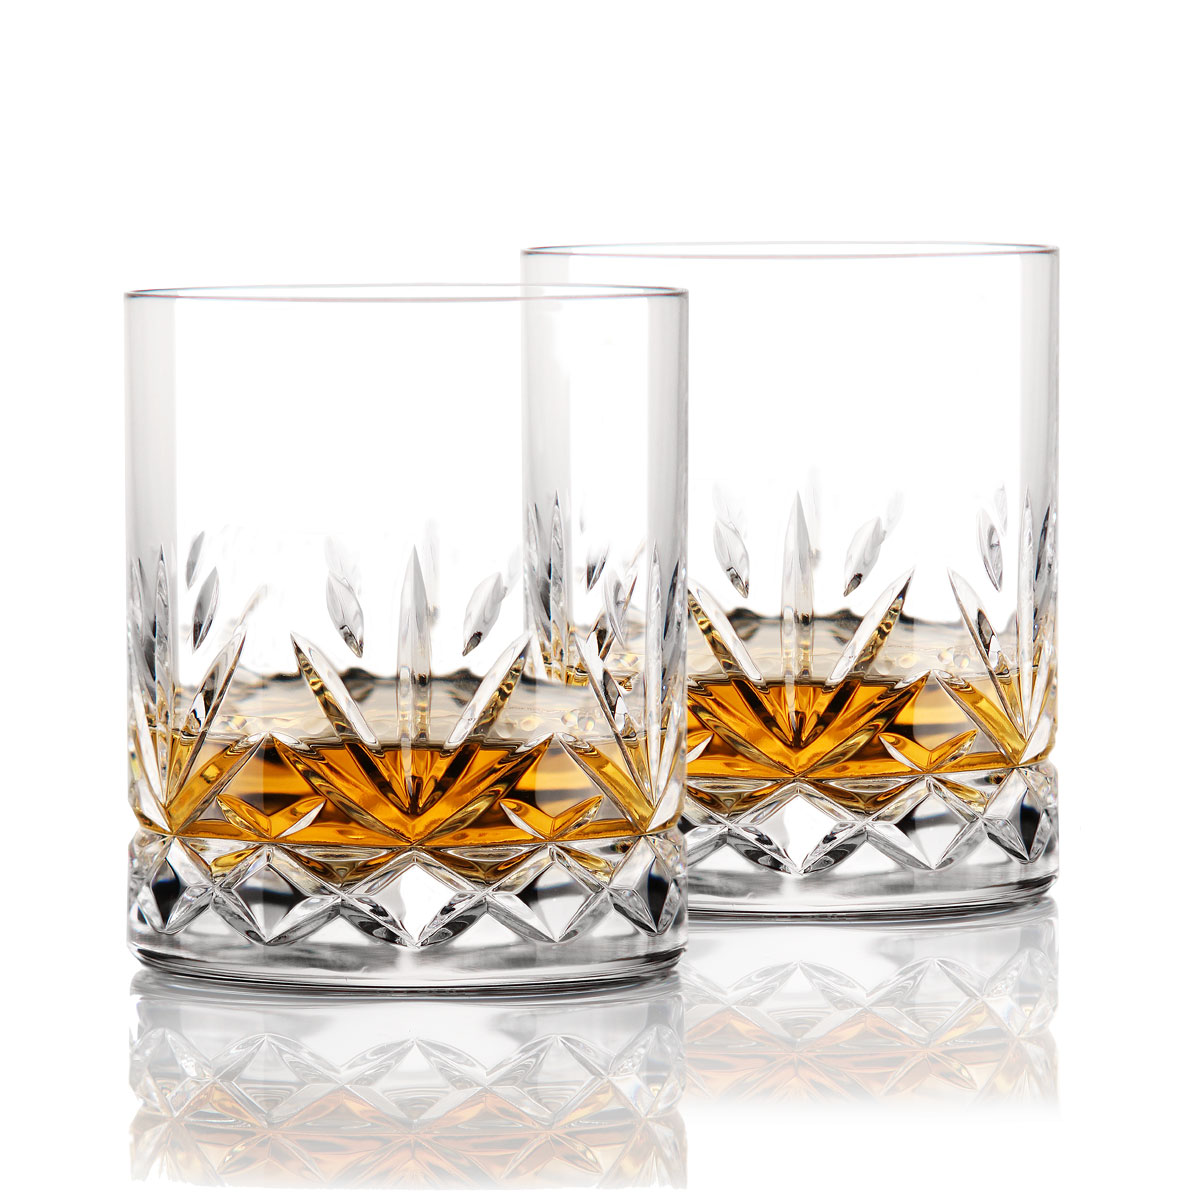 Cashs Ireland, Annestown Irish Whiskey DOF Glass, 1+1 Free